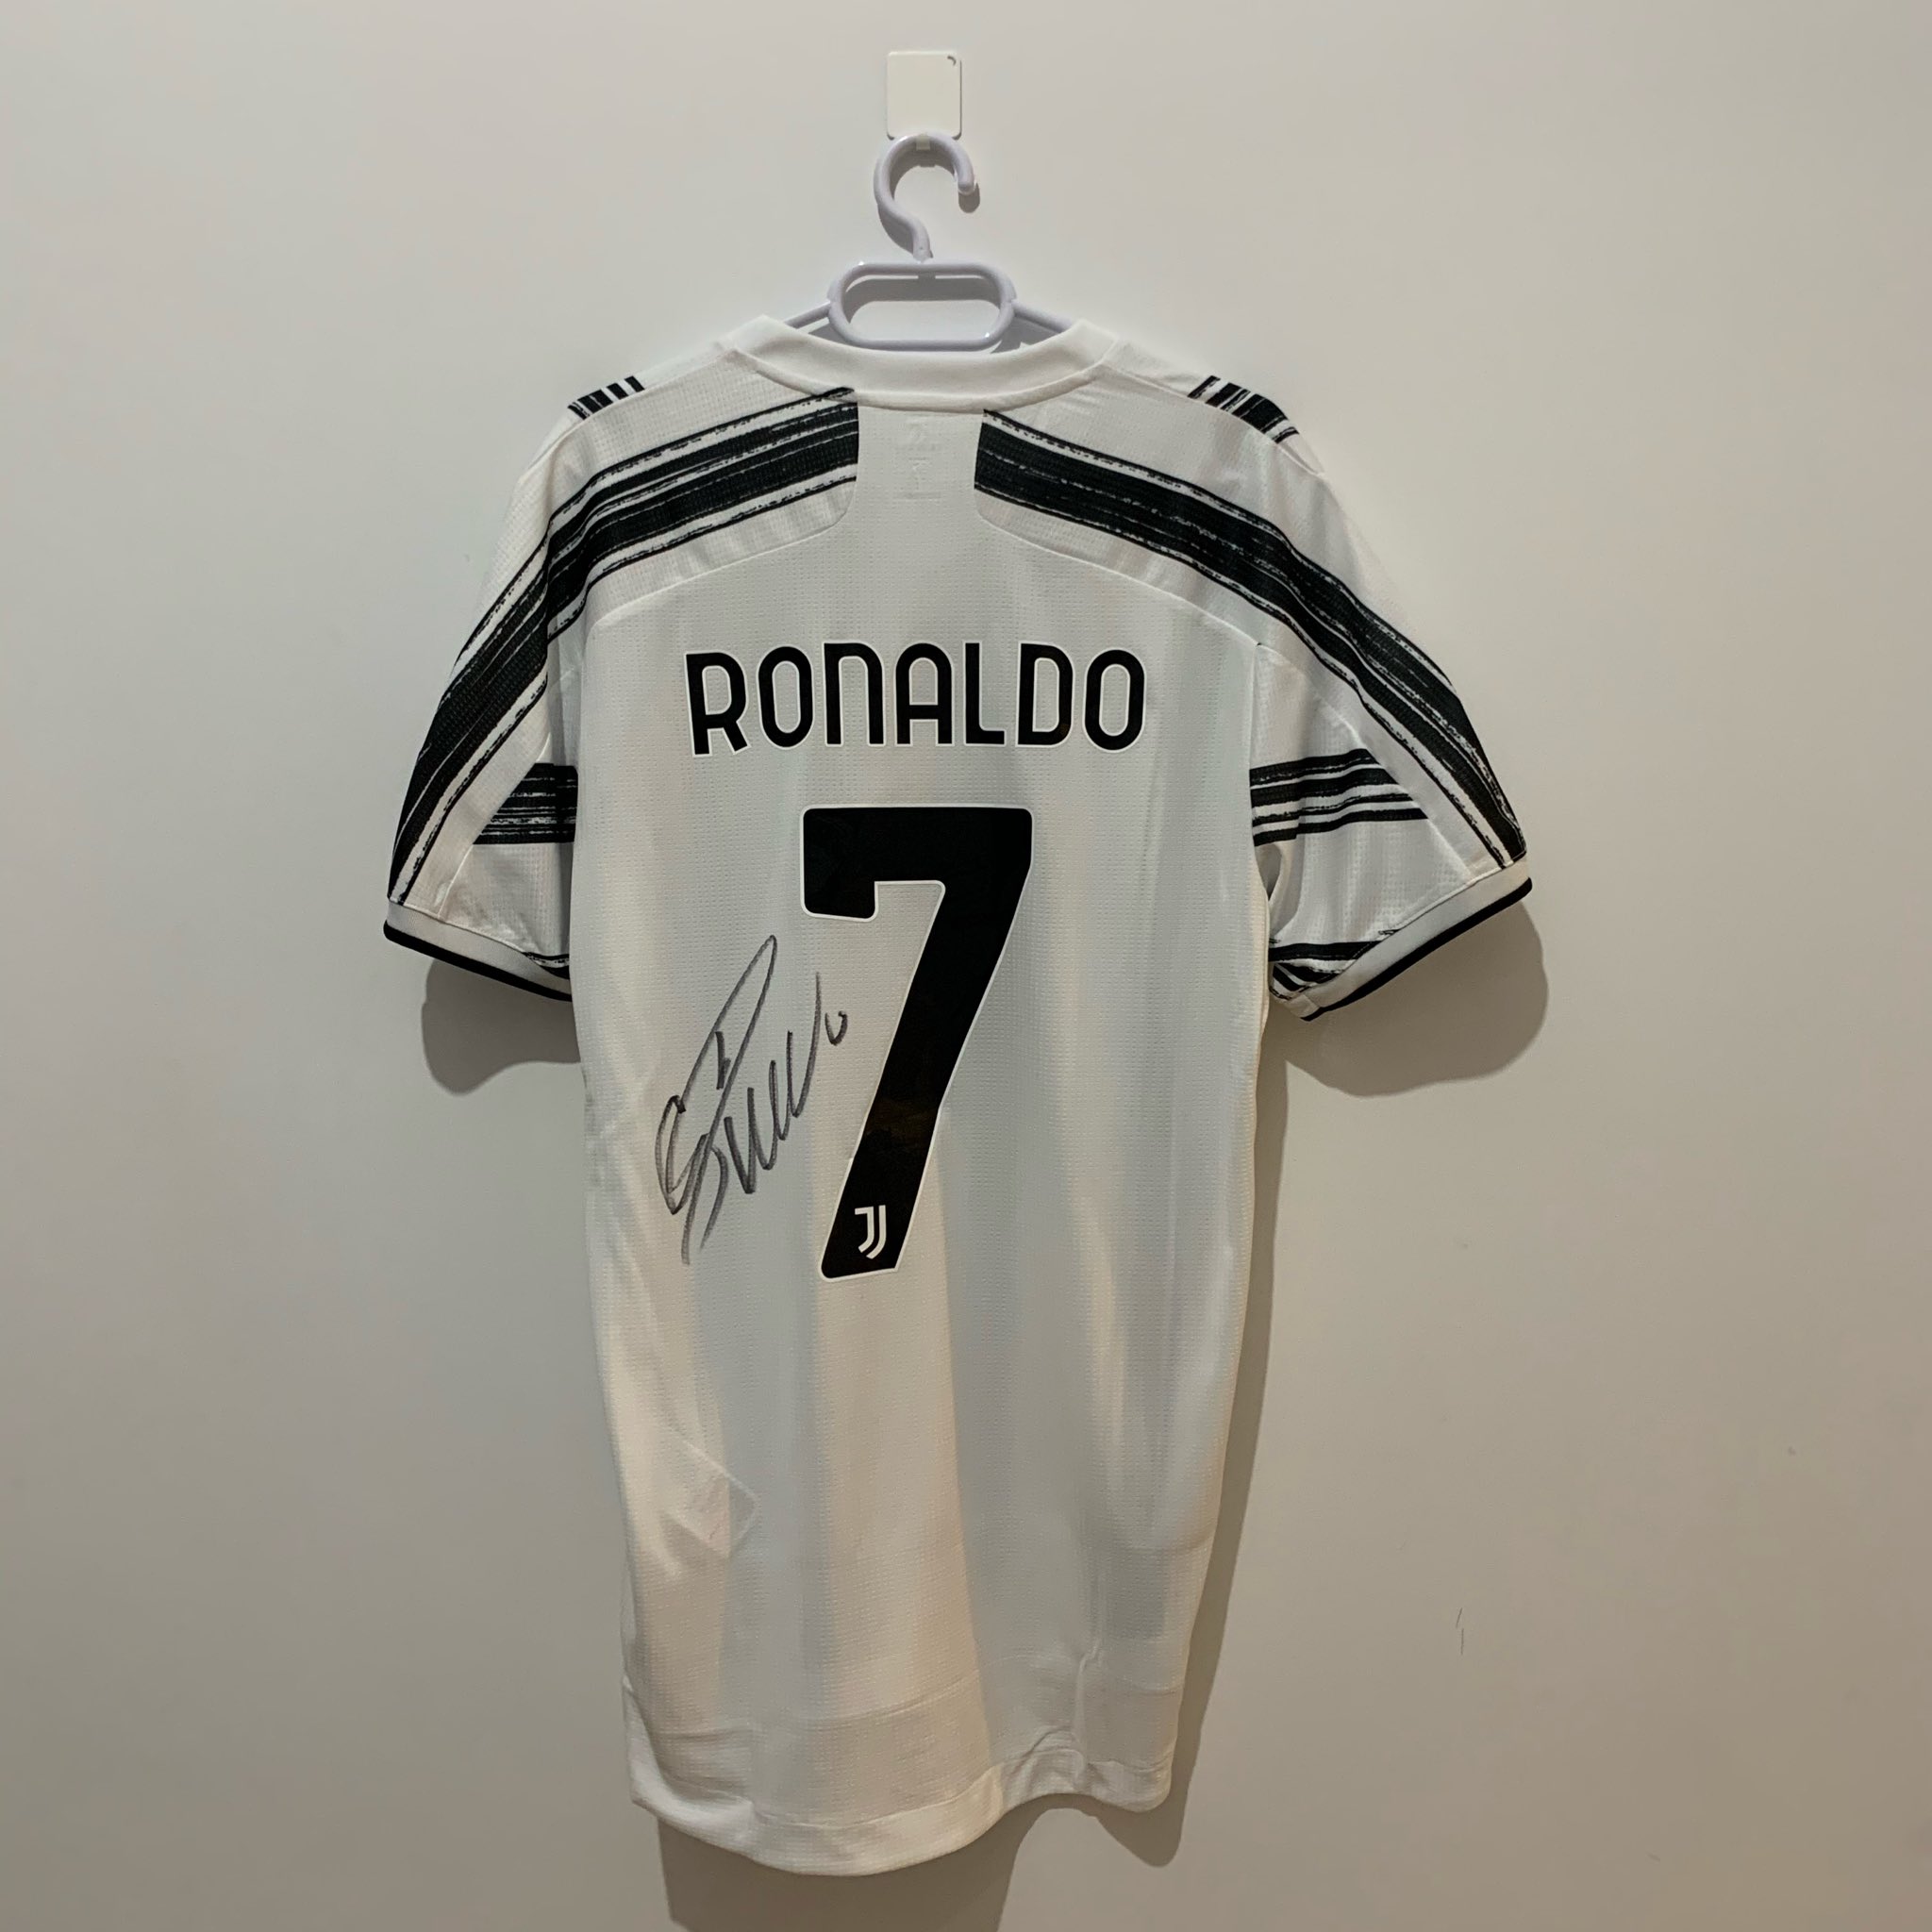 La camiseta de Cristiano Ronaldo que está en la subasta